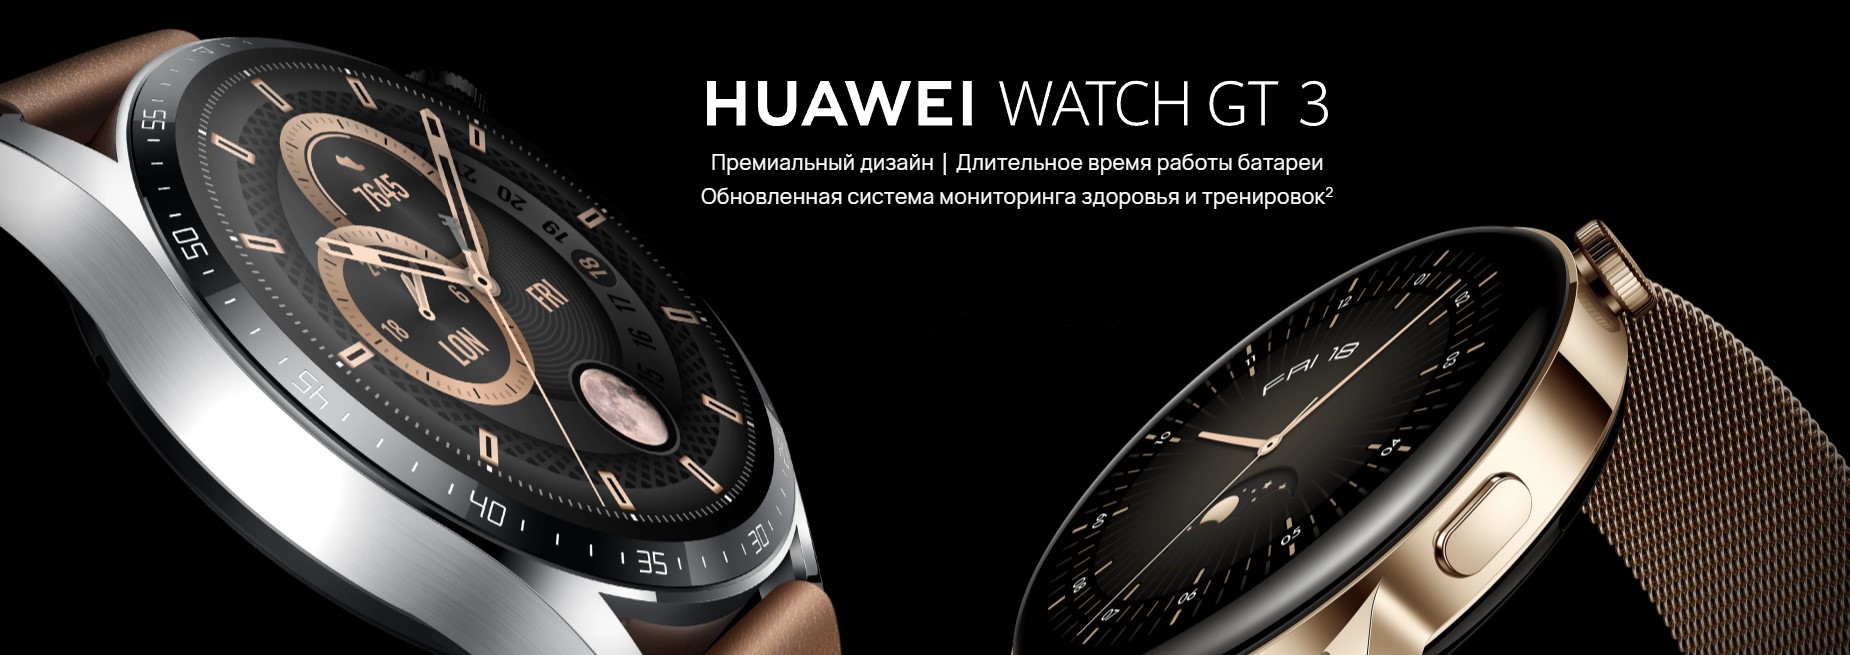 Смарт часы huawei gt 3 jpt b29. Huawei watch gt 3 Elite. Смарт-часы Huawei gt 3 mil-b19 Black SS / Black Fluoroelastomer. Huawei watch gt3 Jupiter.